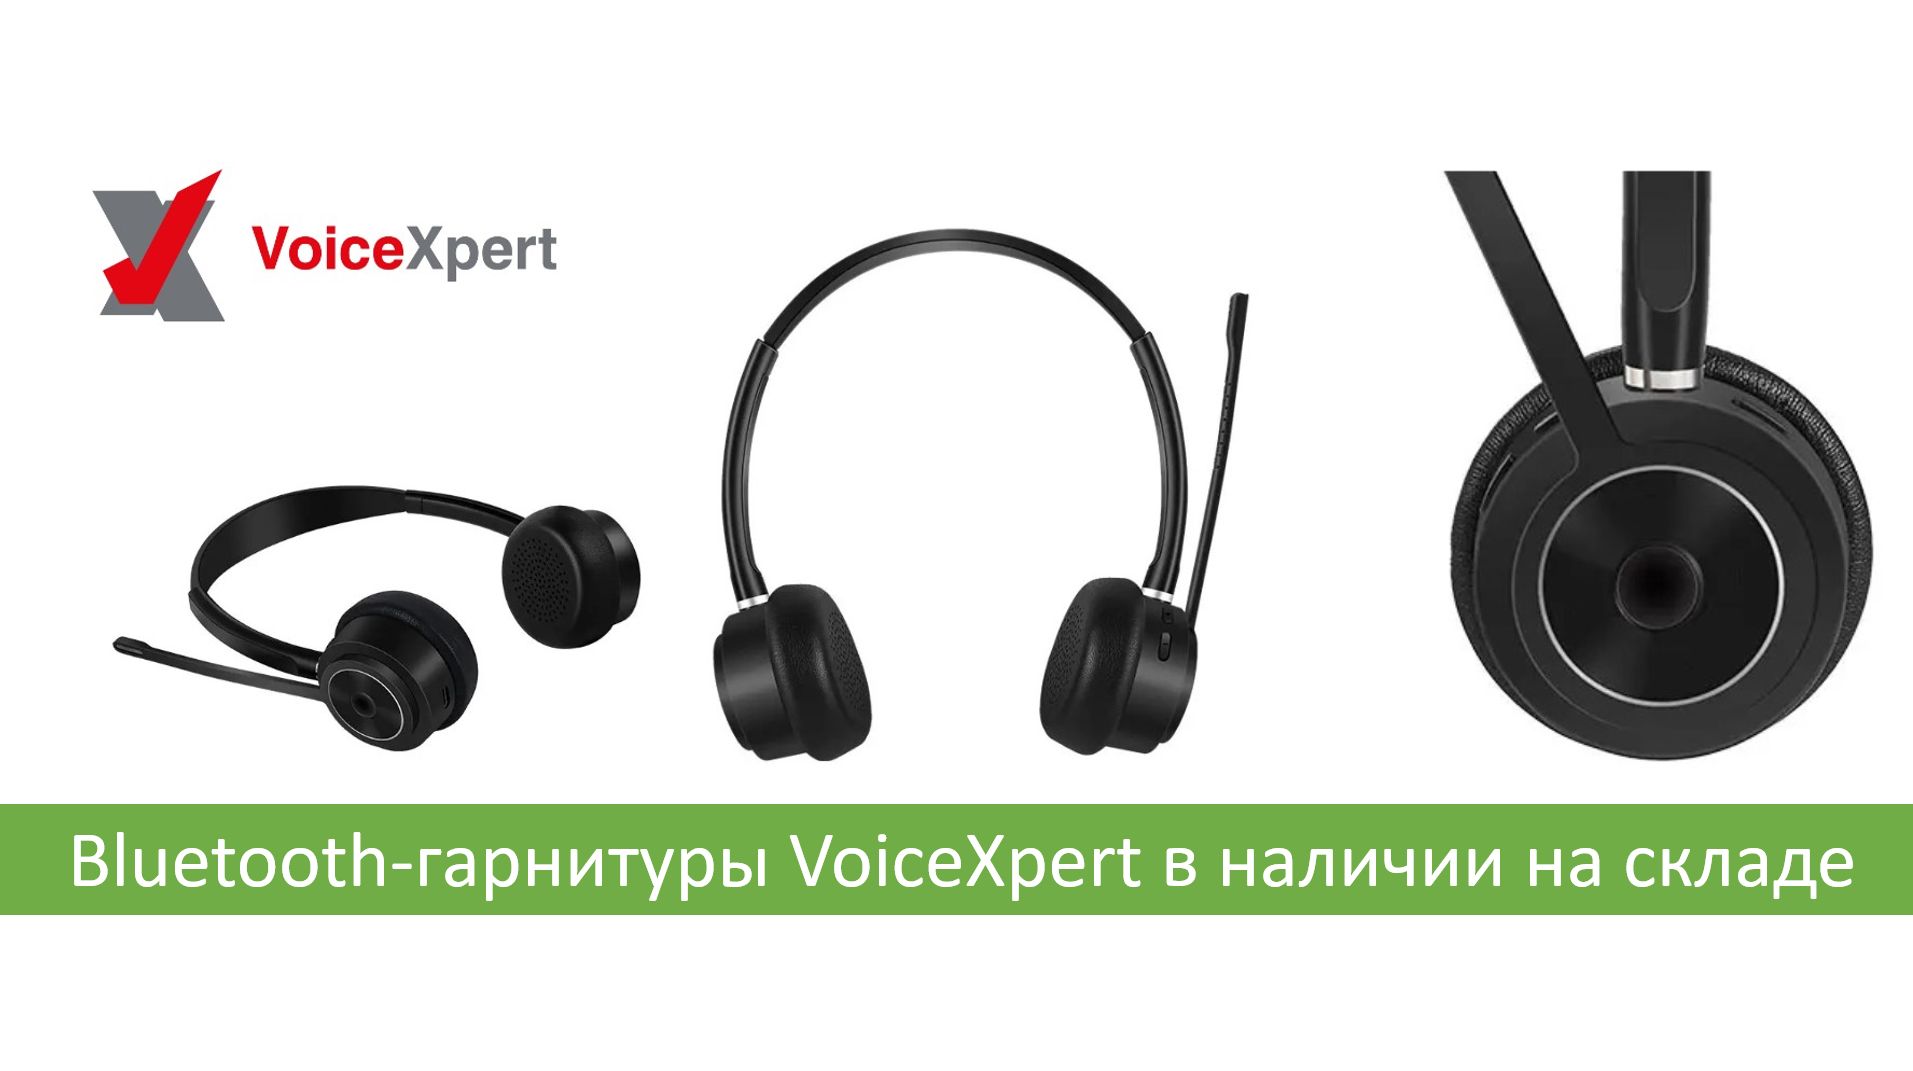 Беспроводные гарнитуры VoiceXpert в наличии!